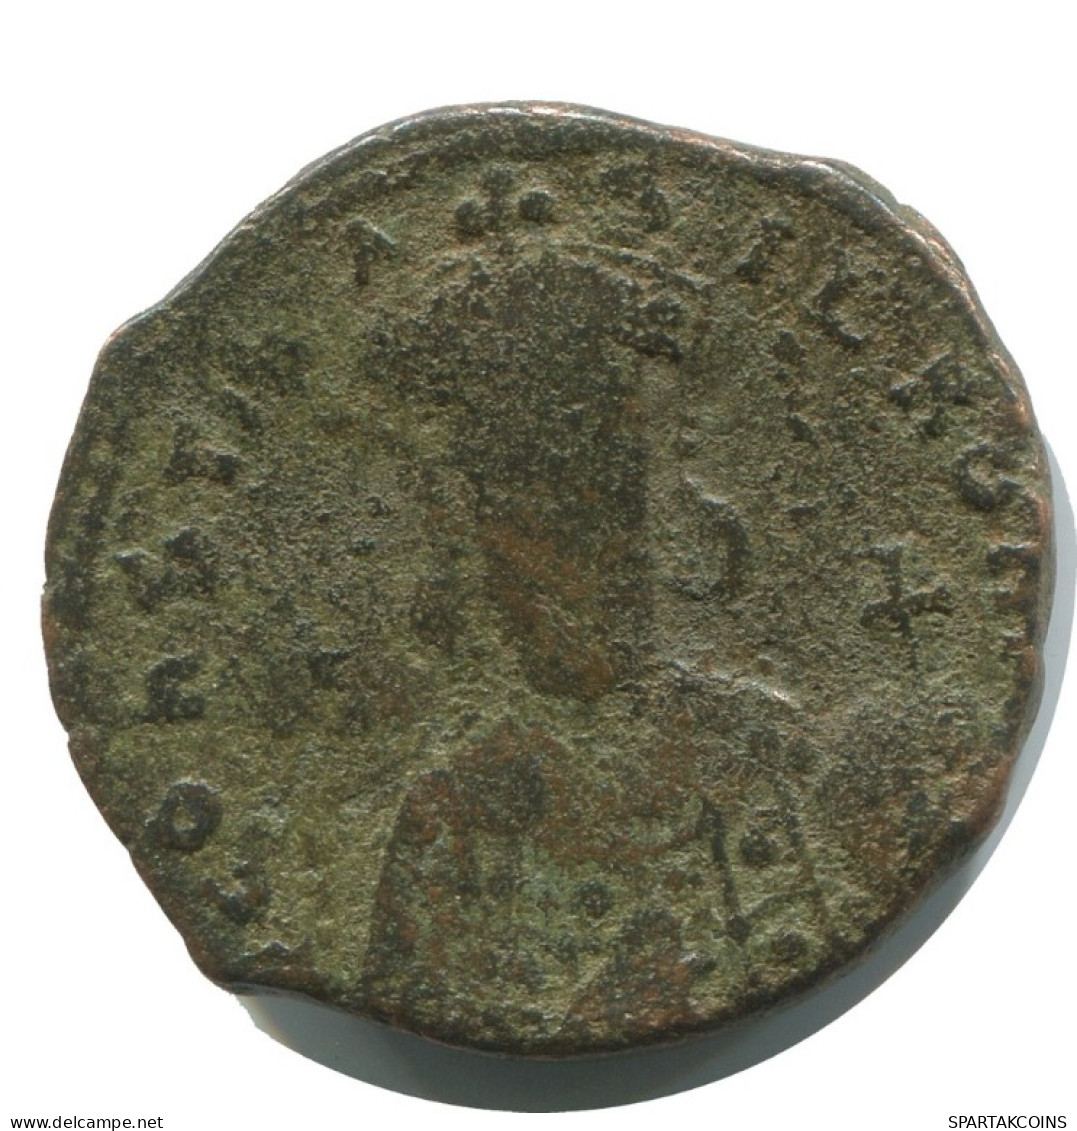 CONSTANTINUS VII FOLLIS Antike BYZANTINISCHE Münze  6.1g/25mm #AB318.9.D.A - Byzantines